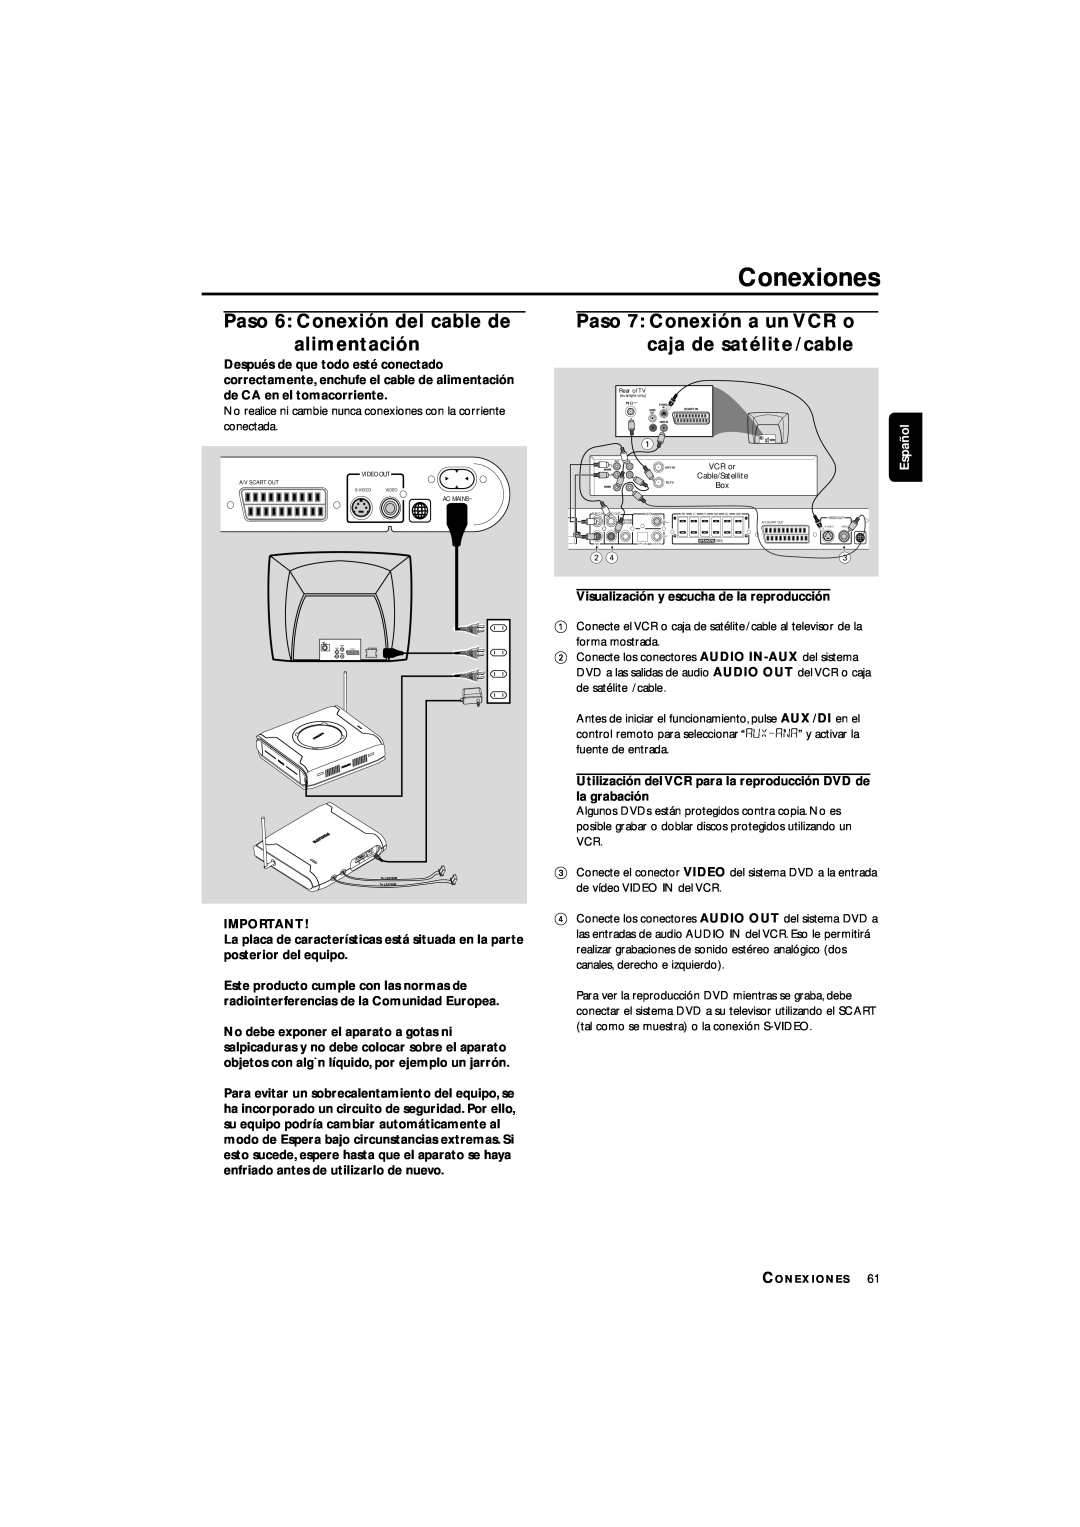 Philips LX3700D manual Conexiones, Paso 6: Conexión del cable de alimentación, Español 